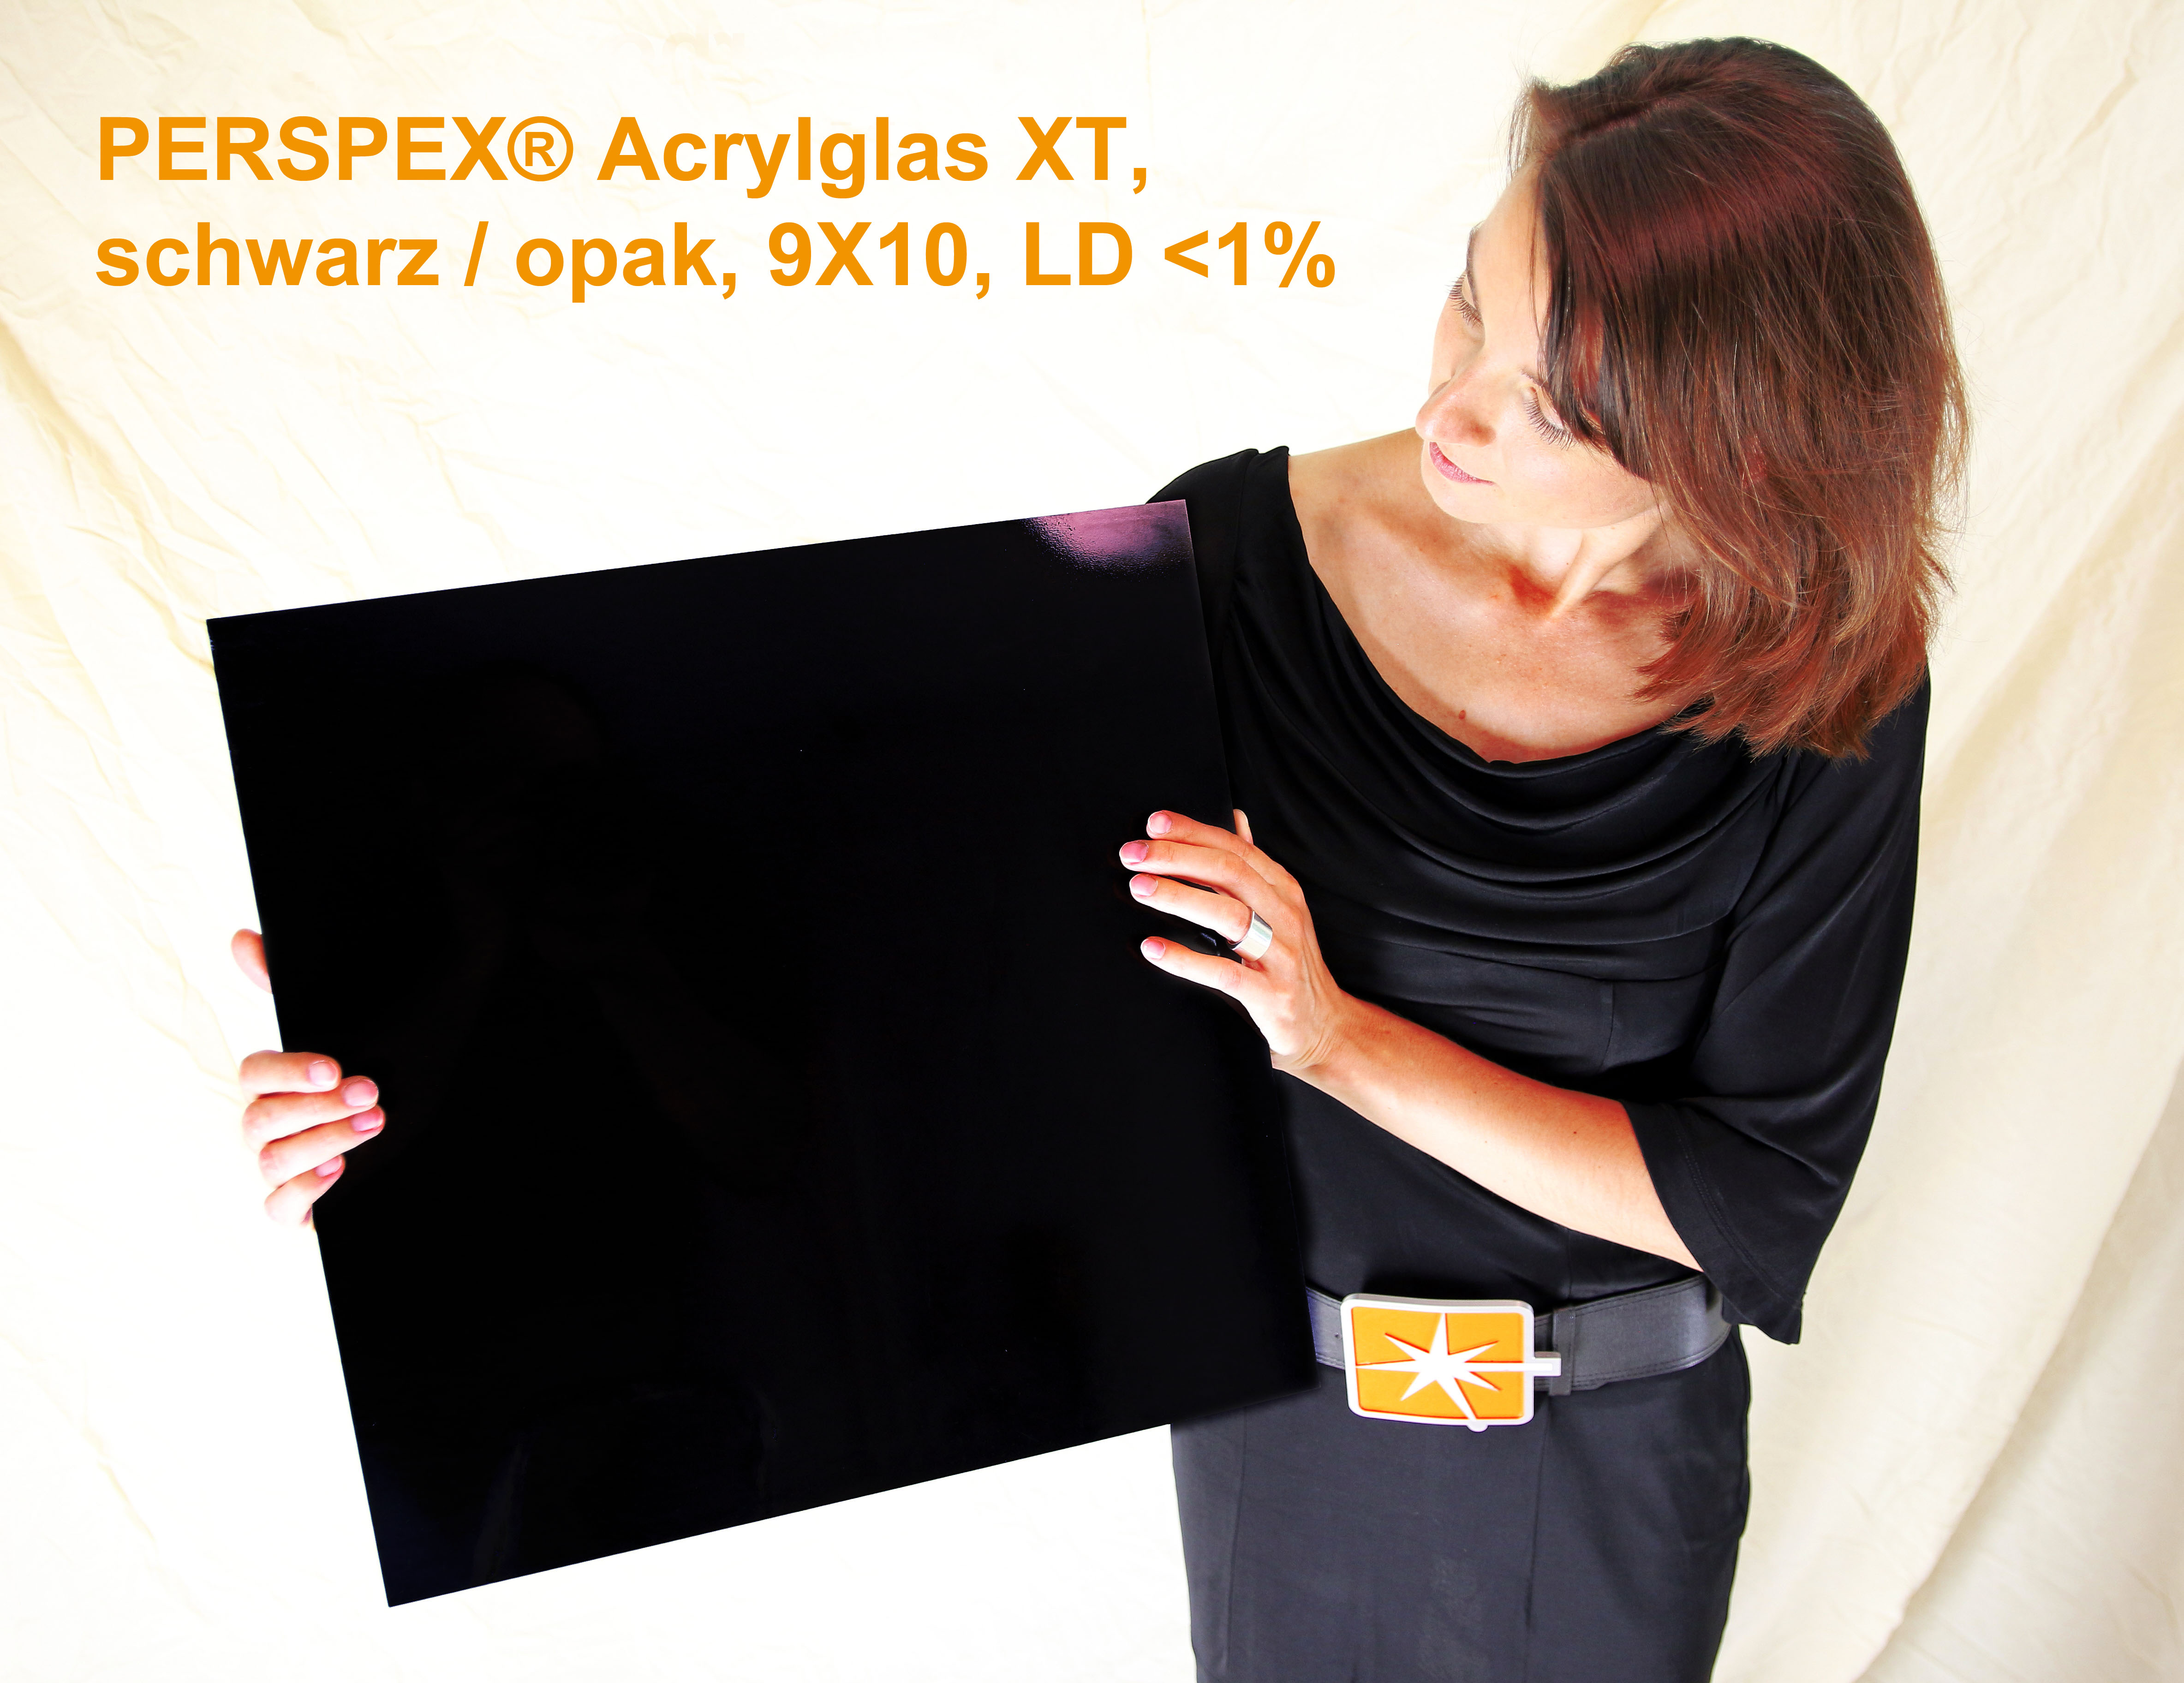 Acrylglas Perspex XT, schwarz / opak, 1000 x 2050 x 3 mm, LD < 1